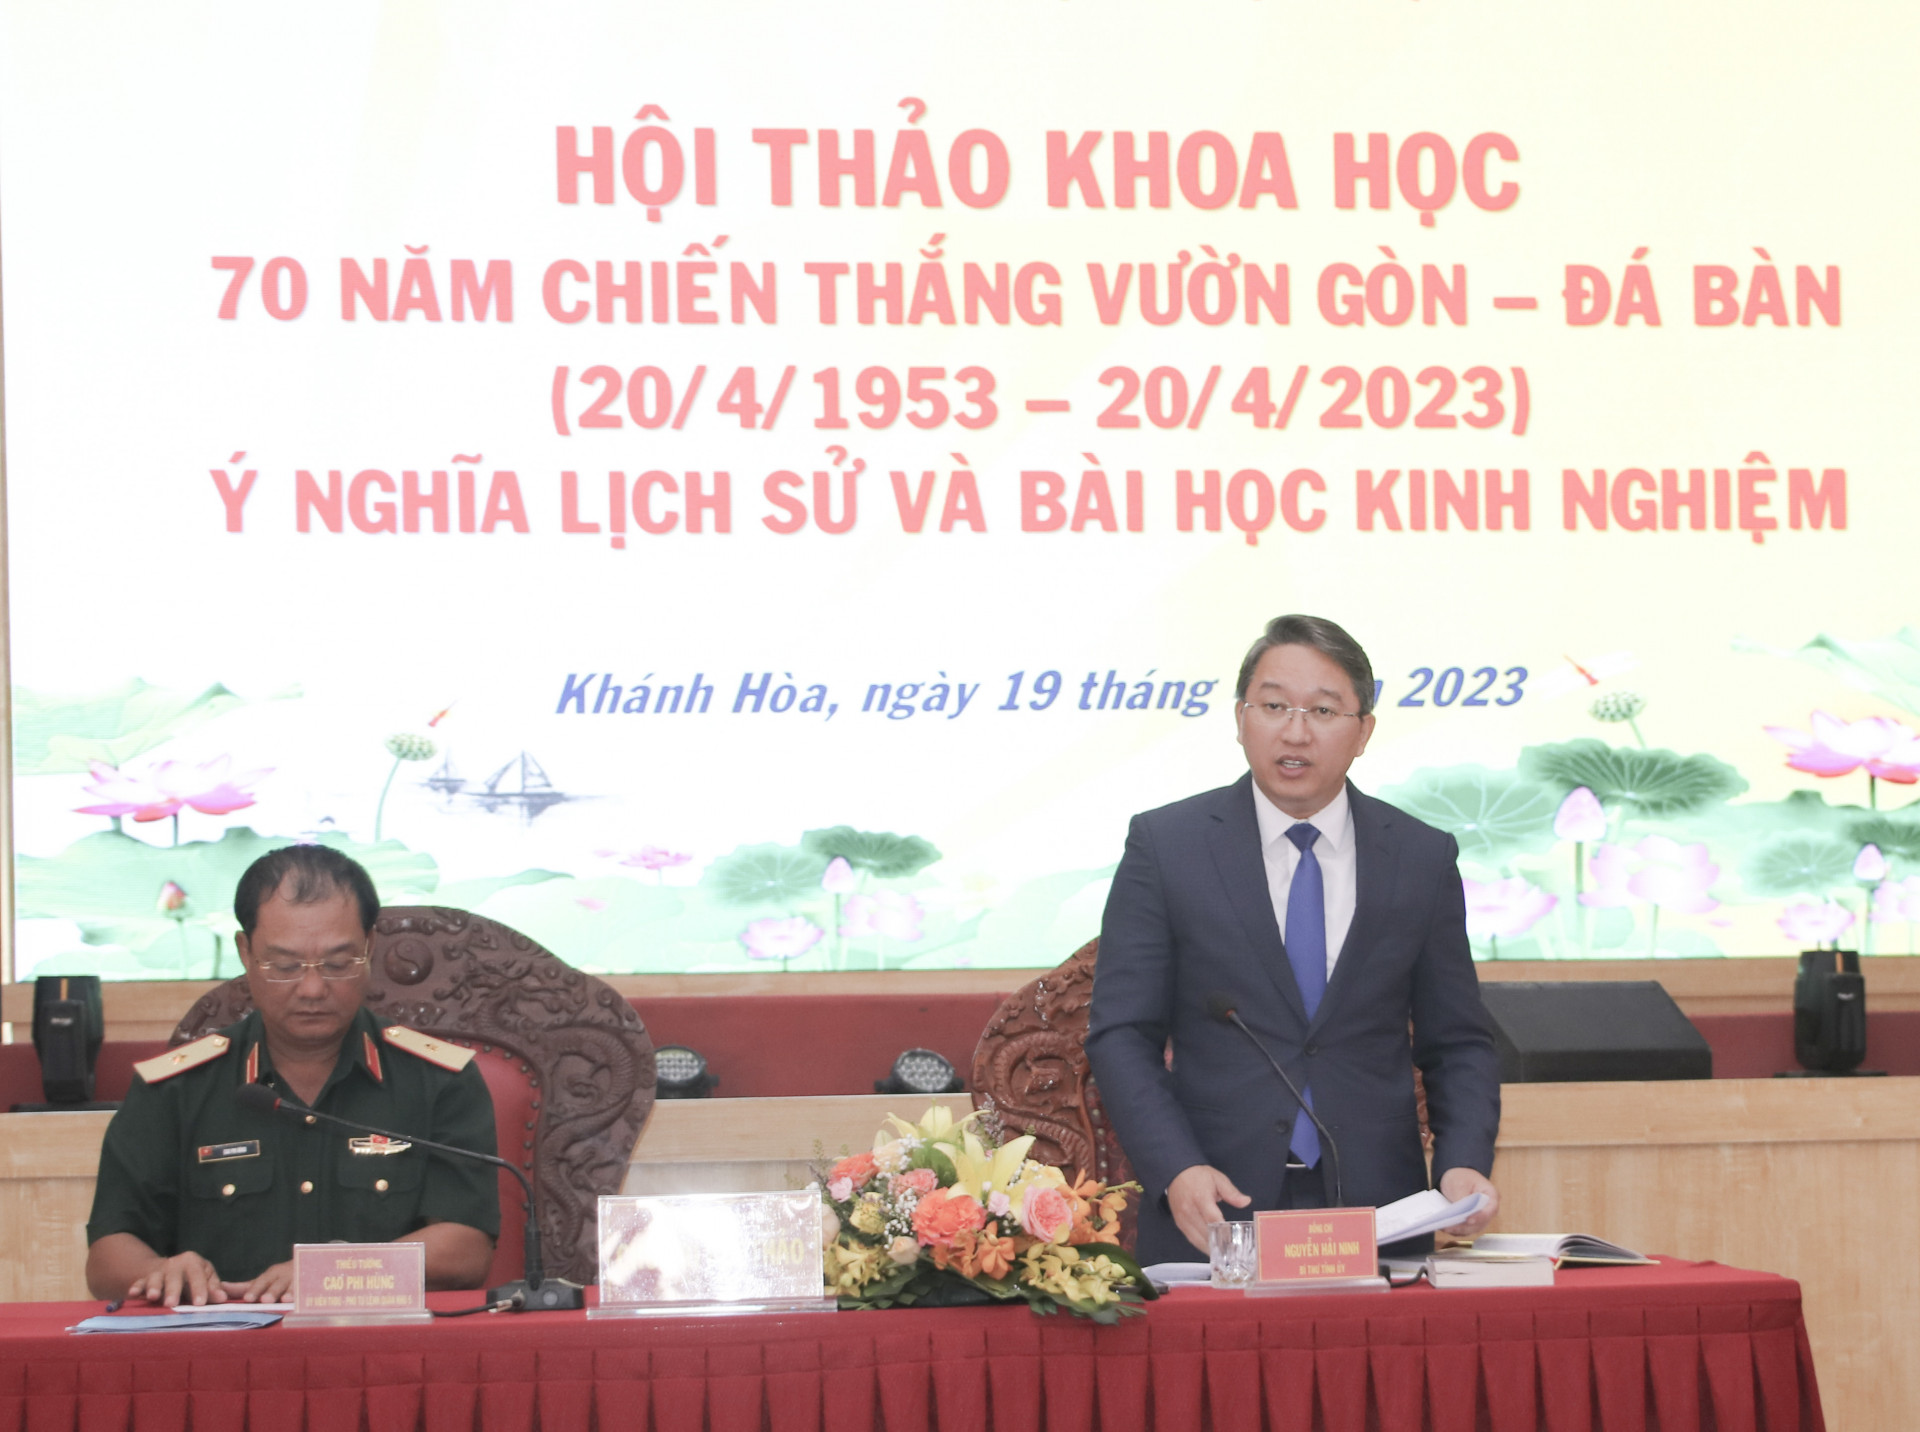 Bí thư Tỉnh ủy Khánh Hòa Nguyễn Hải Ninh và Thiếu tướng Cao Phi Hùng - Phó Tư lệnh Quân khu 5 chủ trì hội thảo.